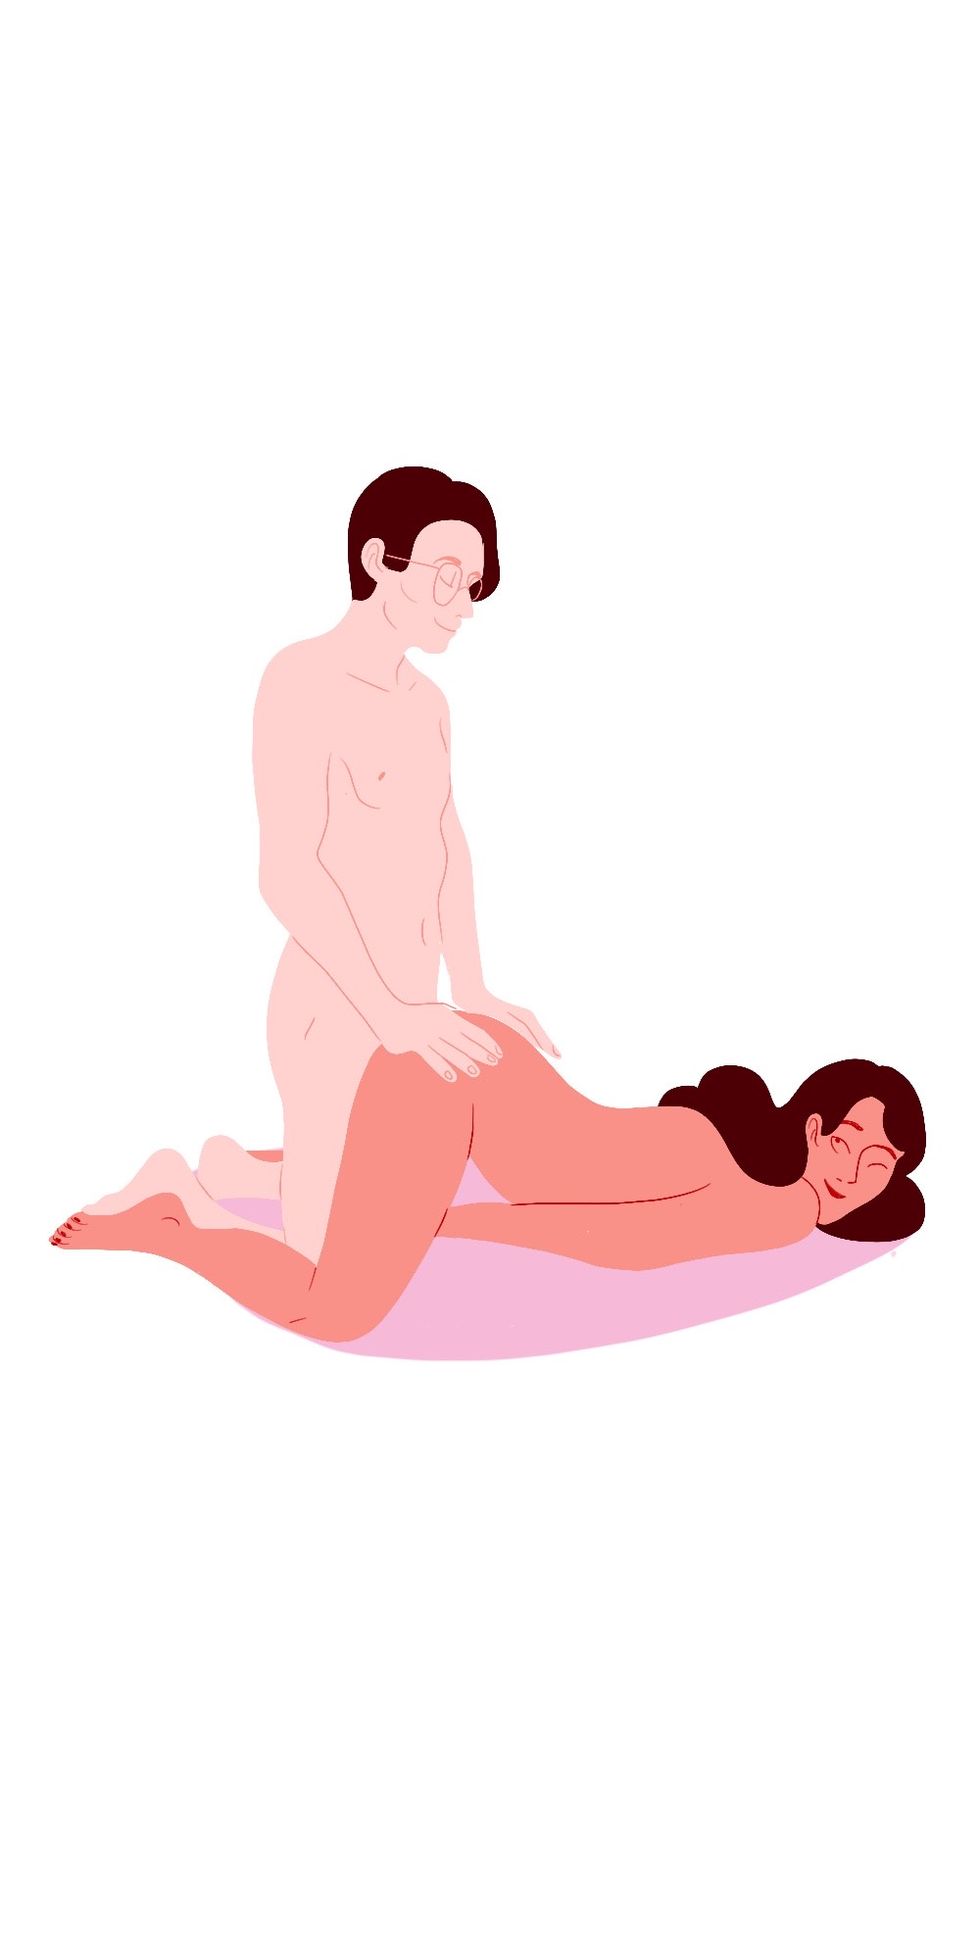 leapfrog sex positions